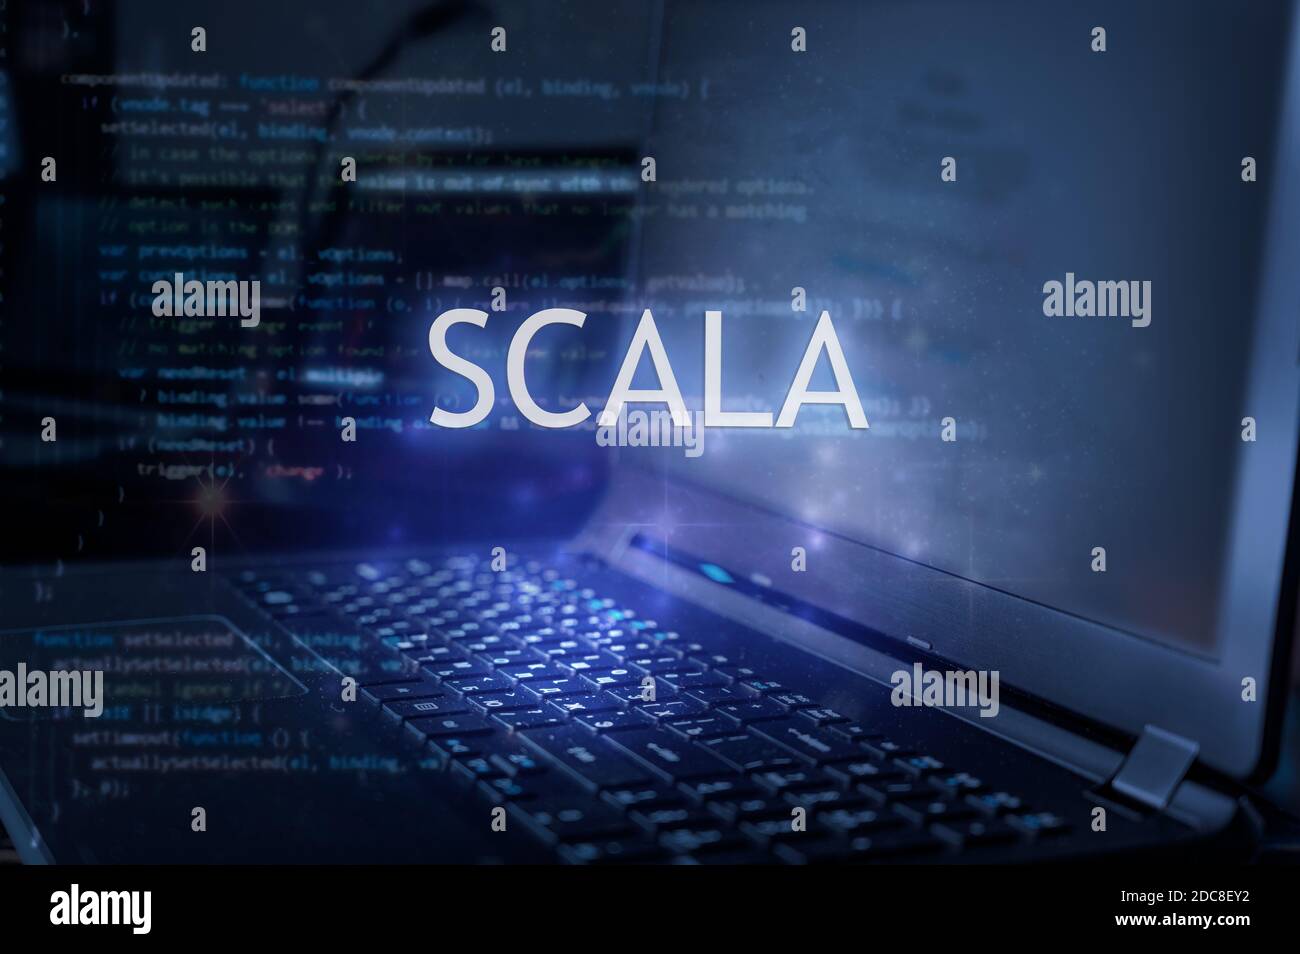 Iscrizione scala su laptop e sfondo codice. Imparare il linguaggio di programmazione scala, corsi di informatica, formazione. Foto Stock